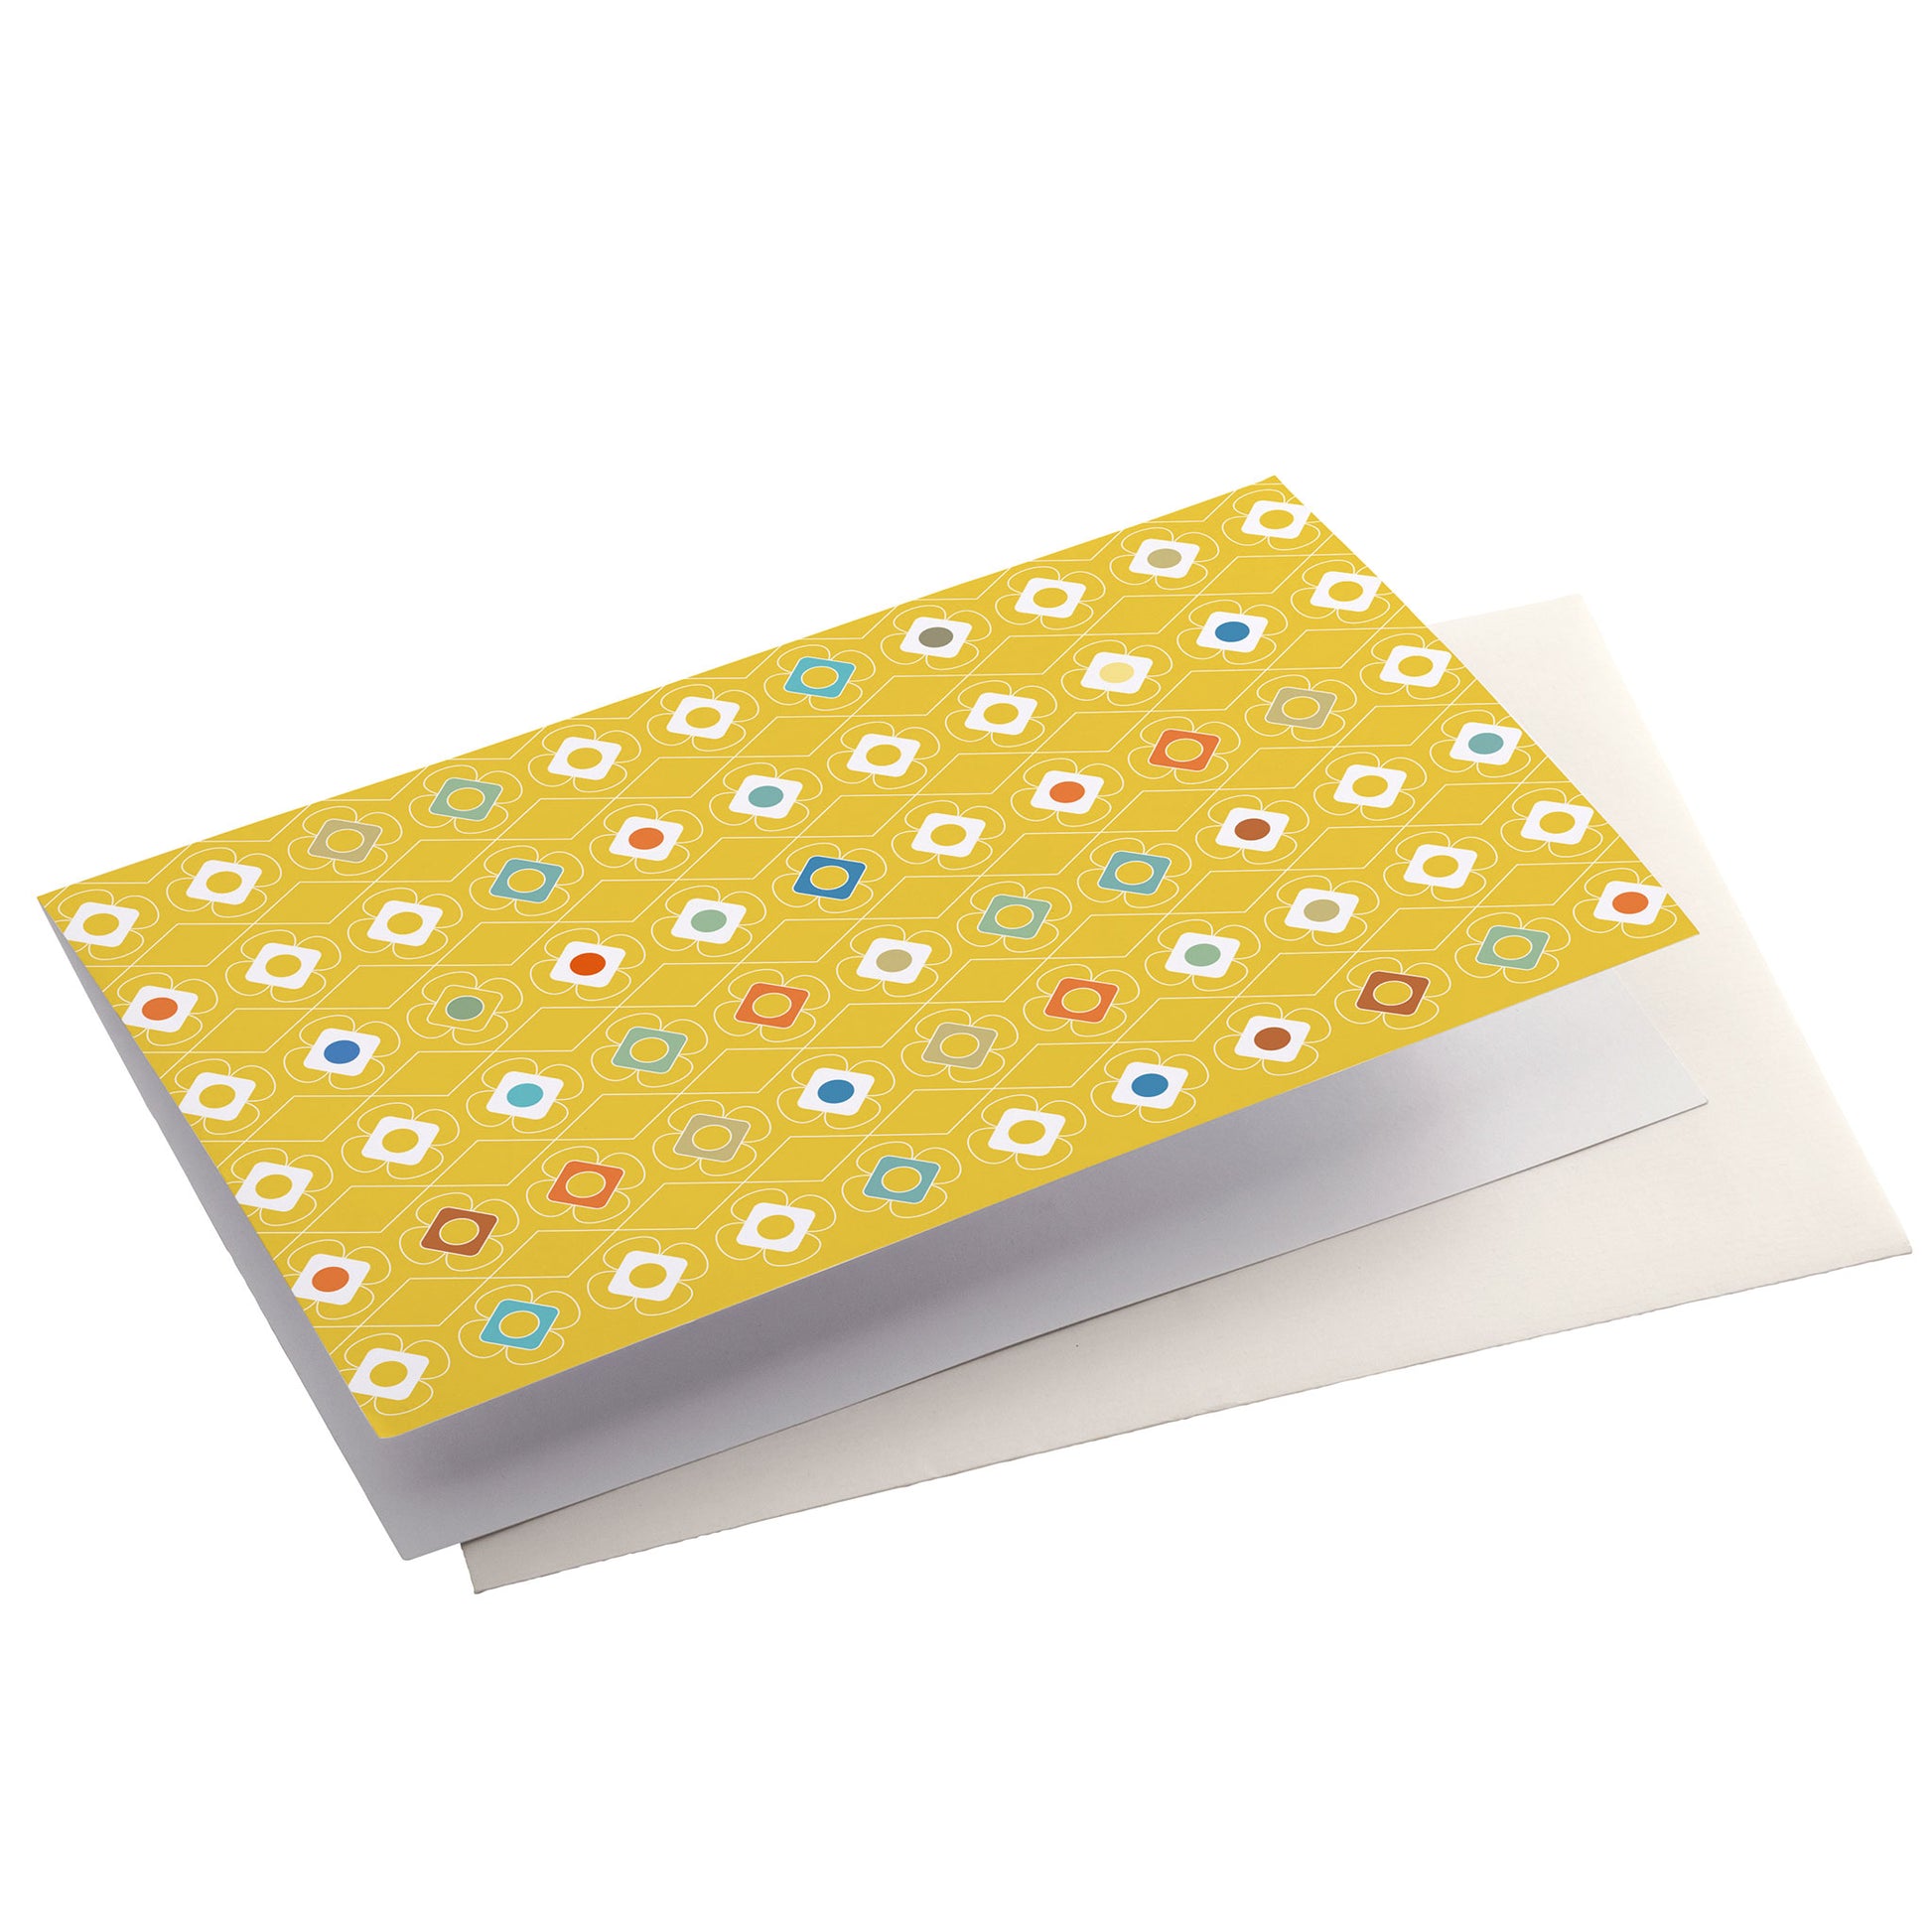 Productafbeelding wenskaart "kleur carrousel geel" zijaanzicht liggend met envelop